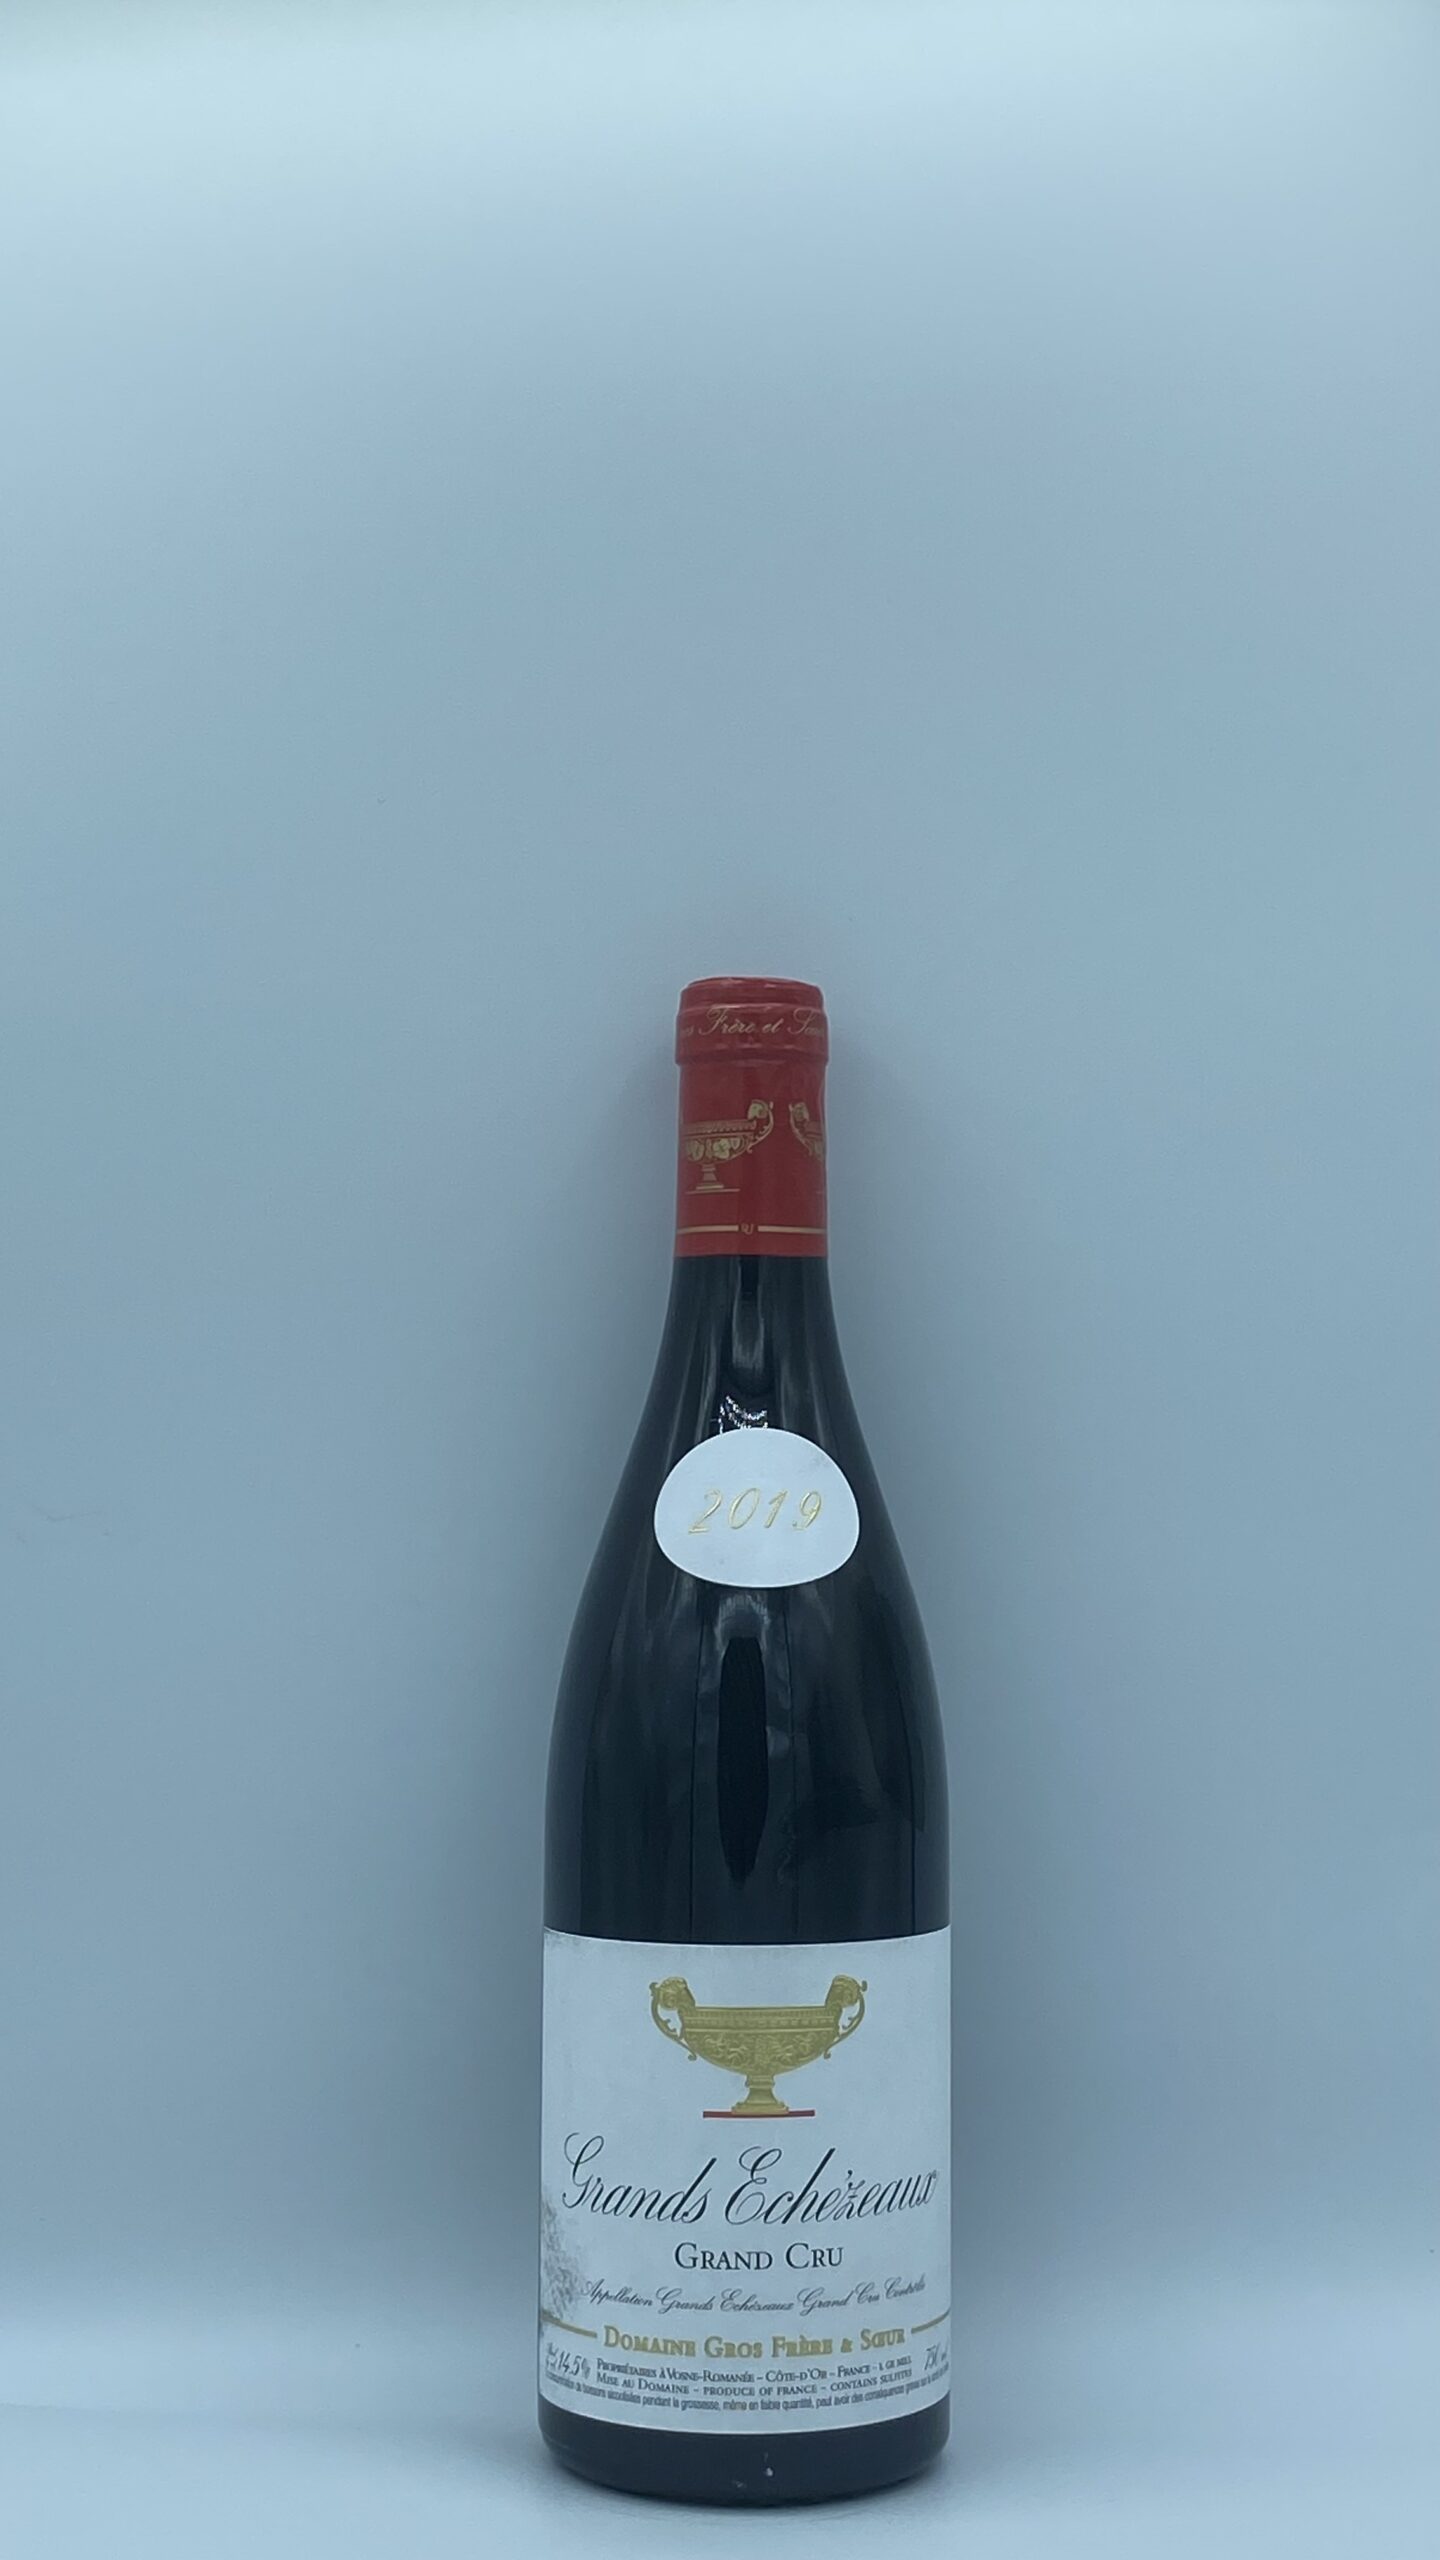 Bourgogne Grands Echezeaux 2019 Domaine Gros Frère & Soeur